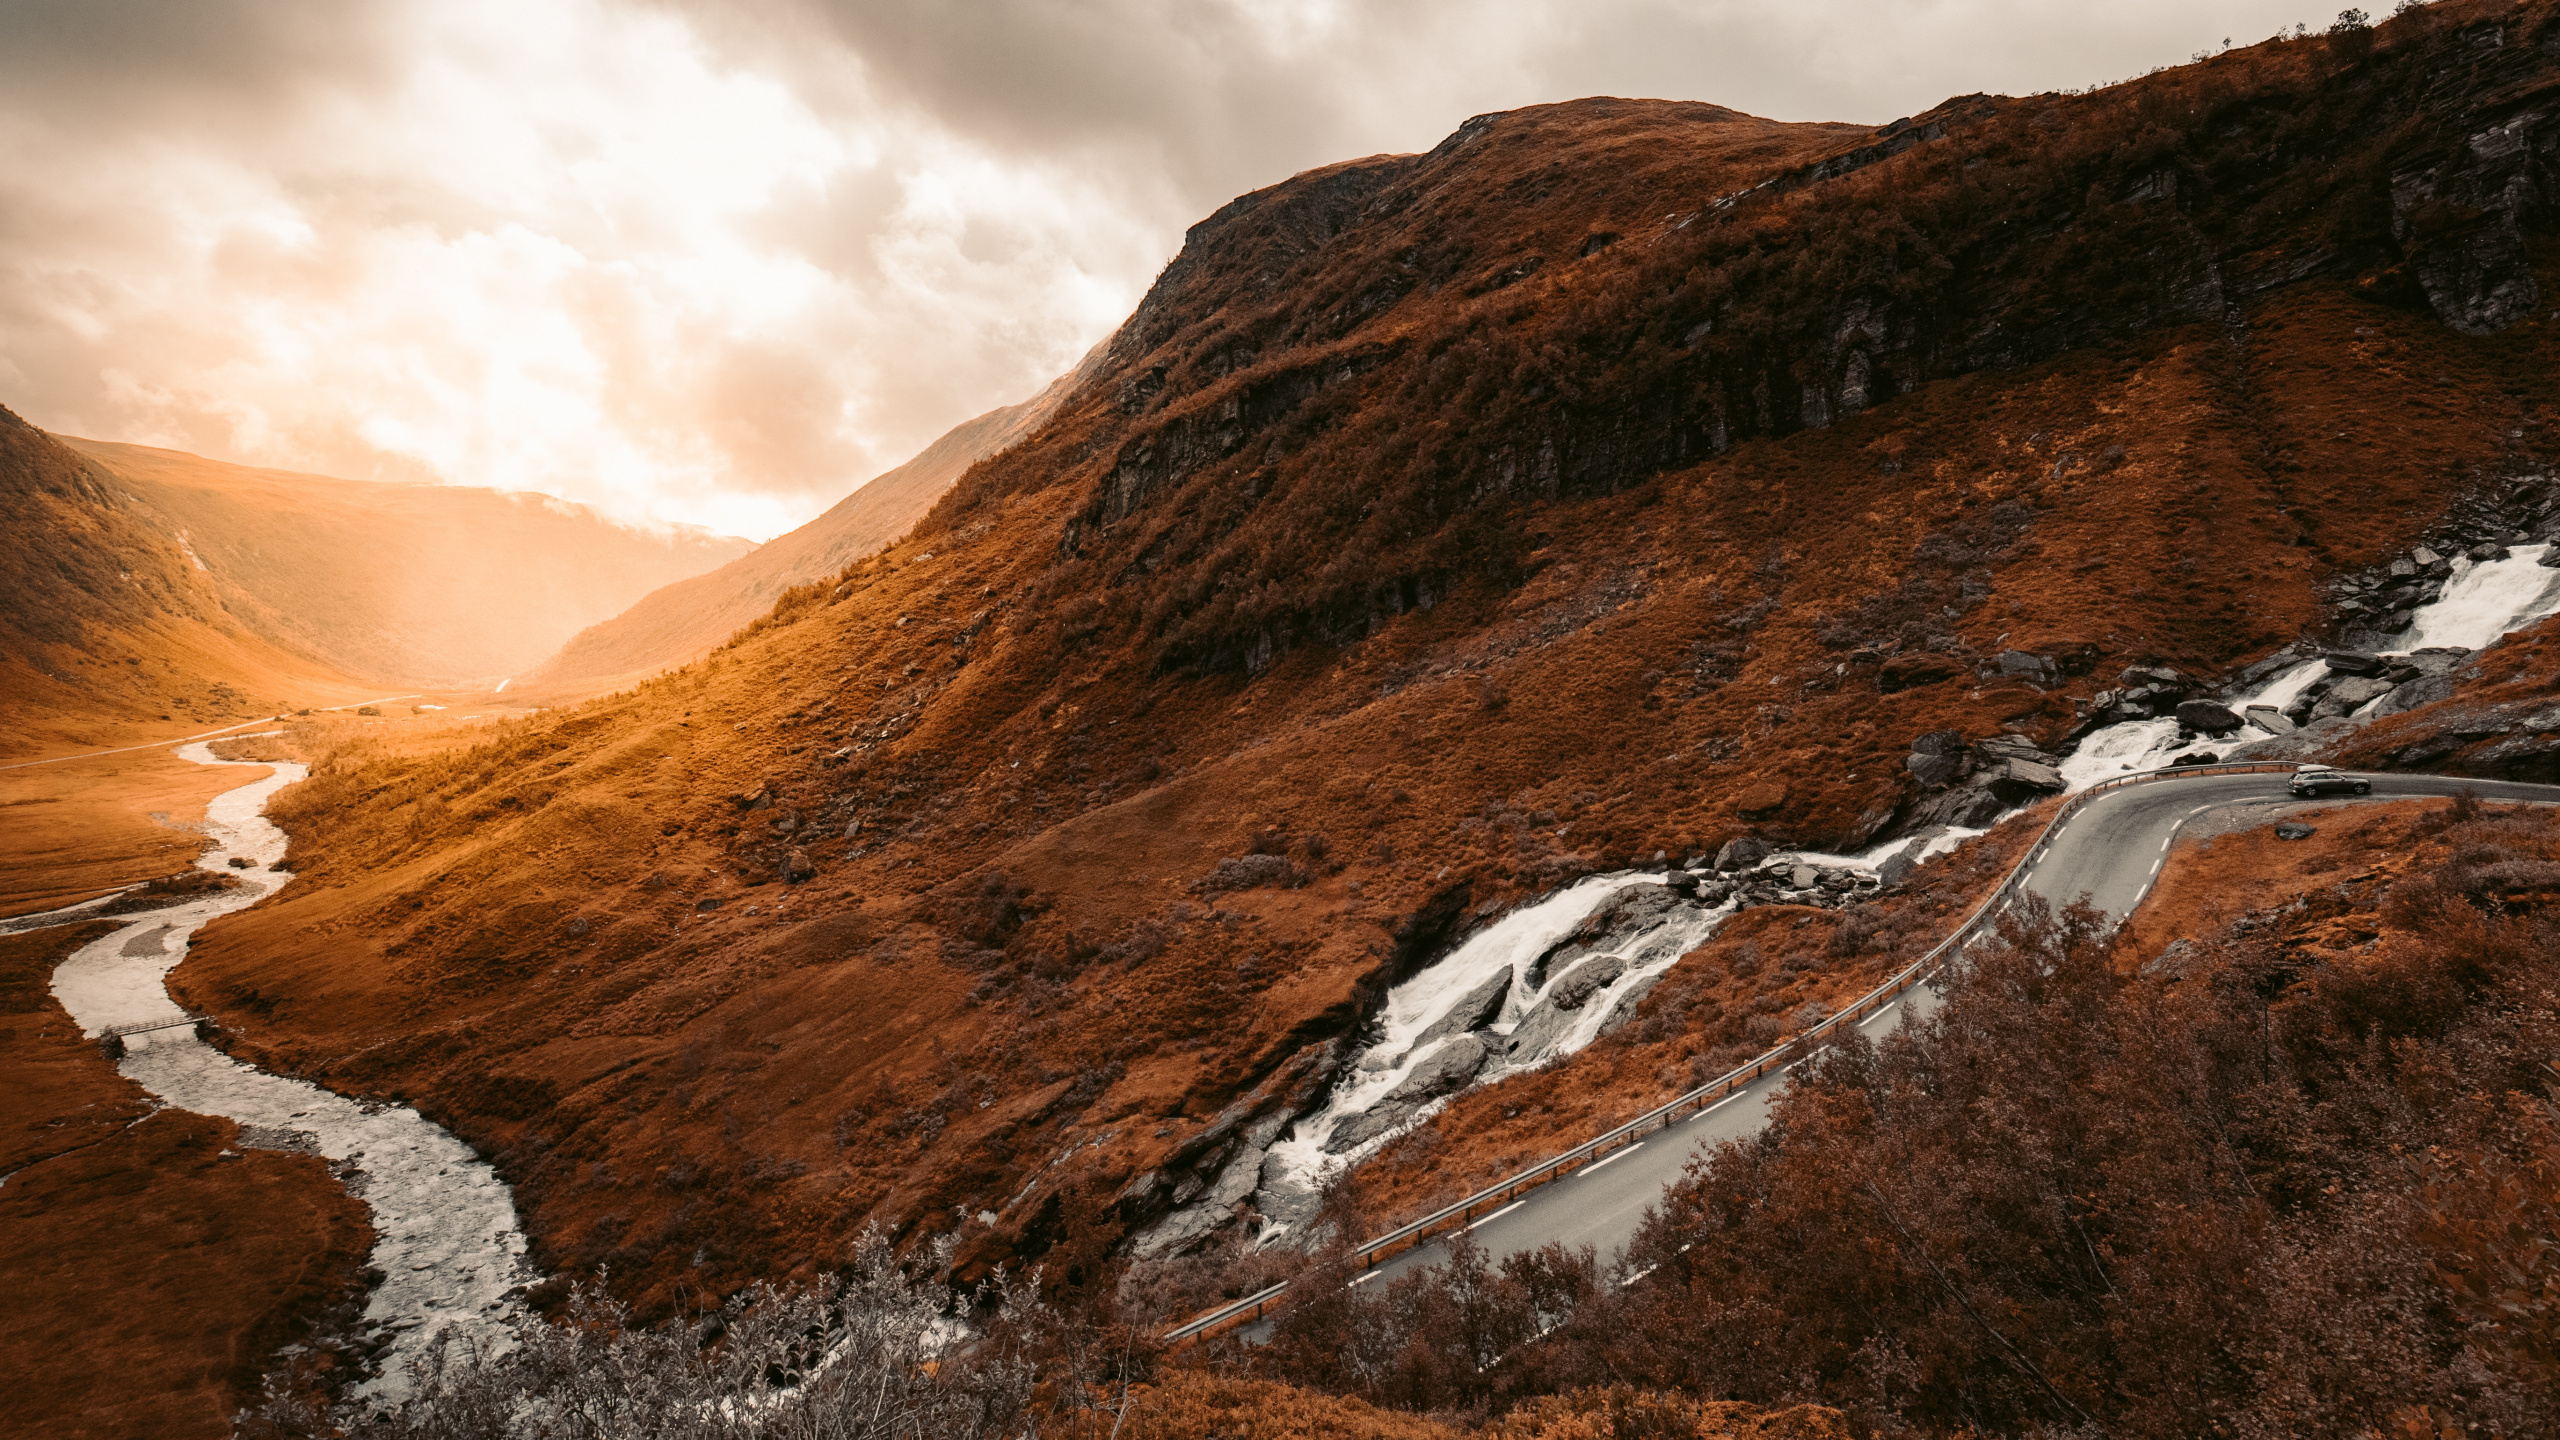 Las Formaciones Montañosas, Naturaleza, Highland, Montaña, Paisaje Natural. Wallpaper in 2560x1440 Resolution